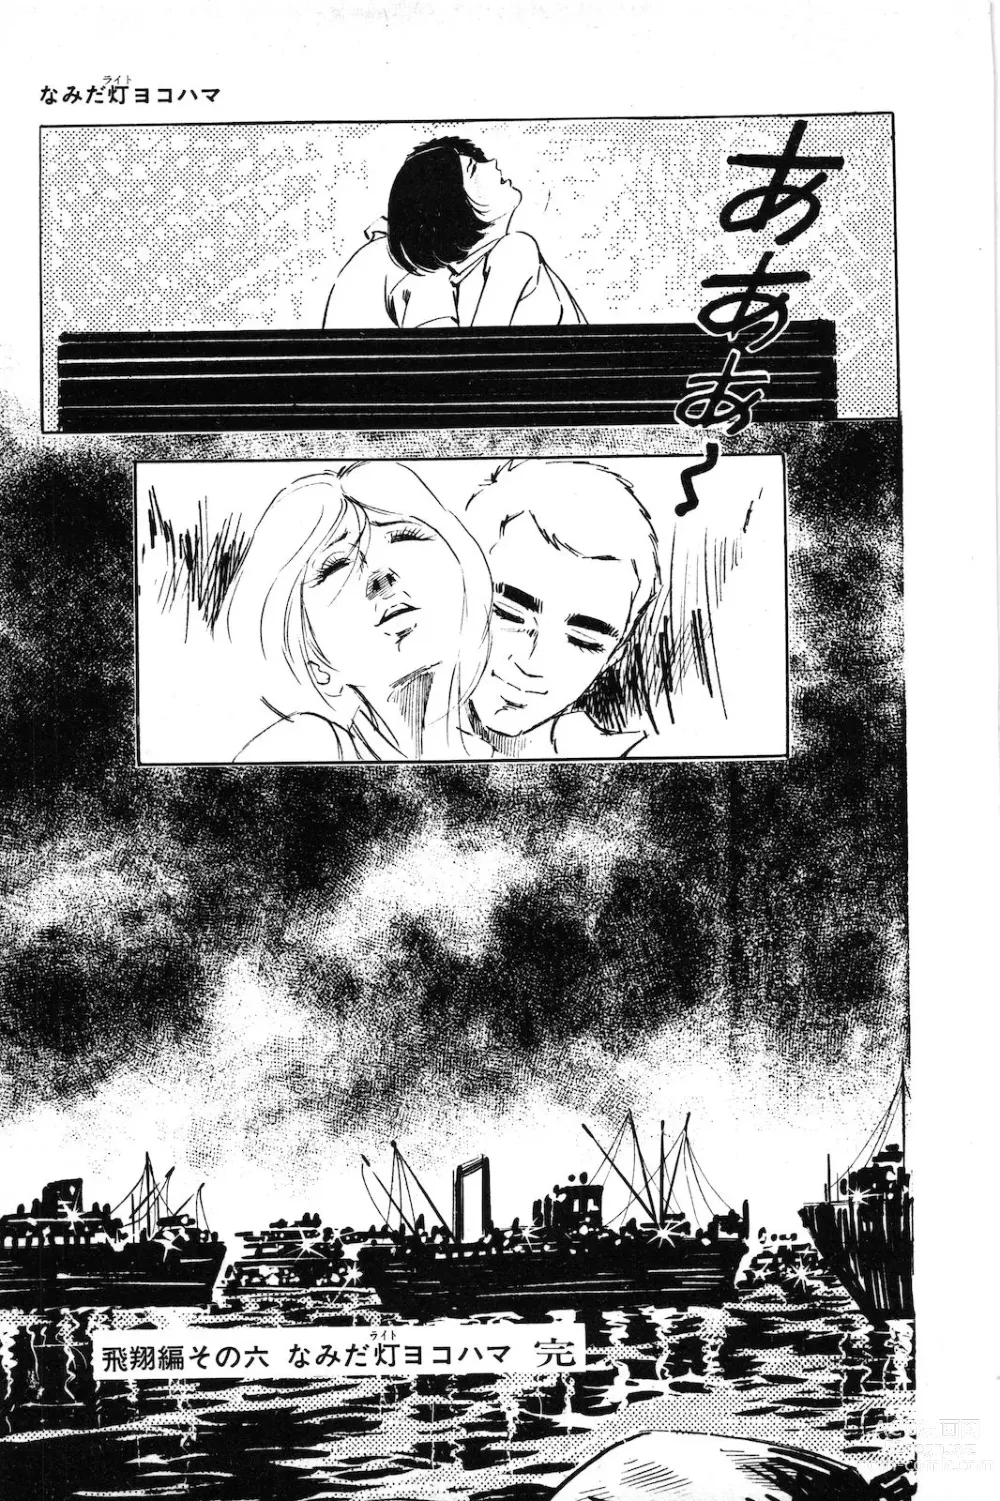 Page 23 of manga Koukousei Burai Hikae 1-8